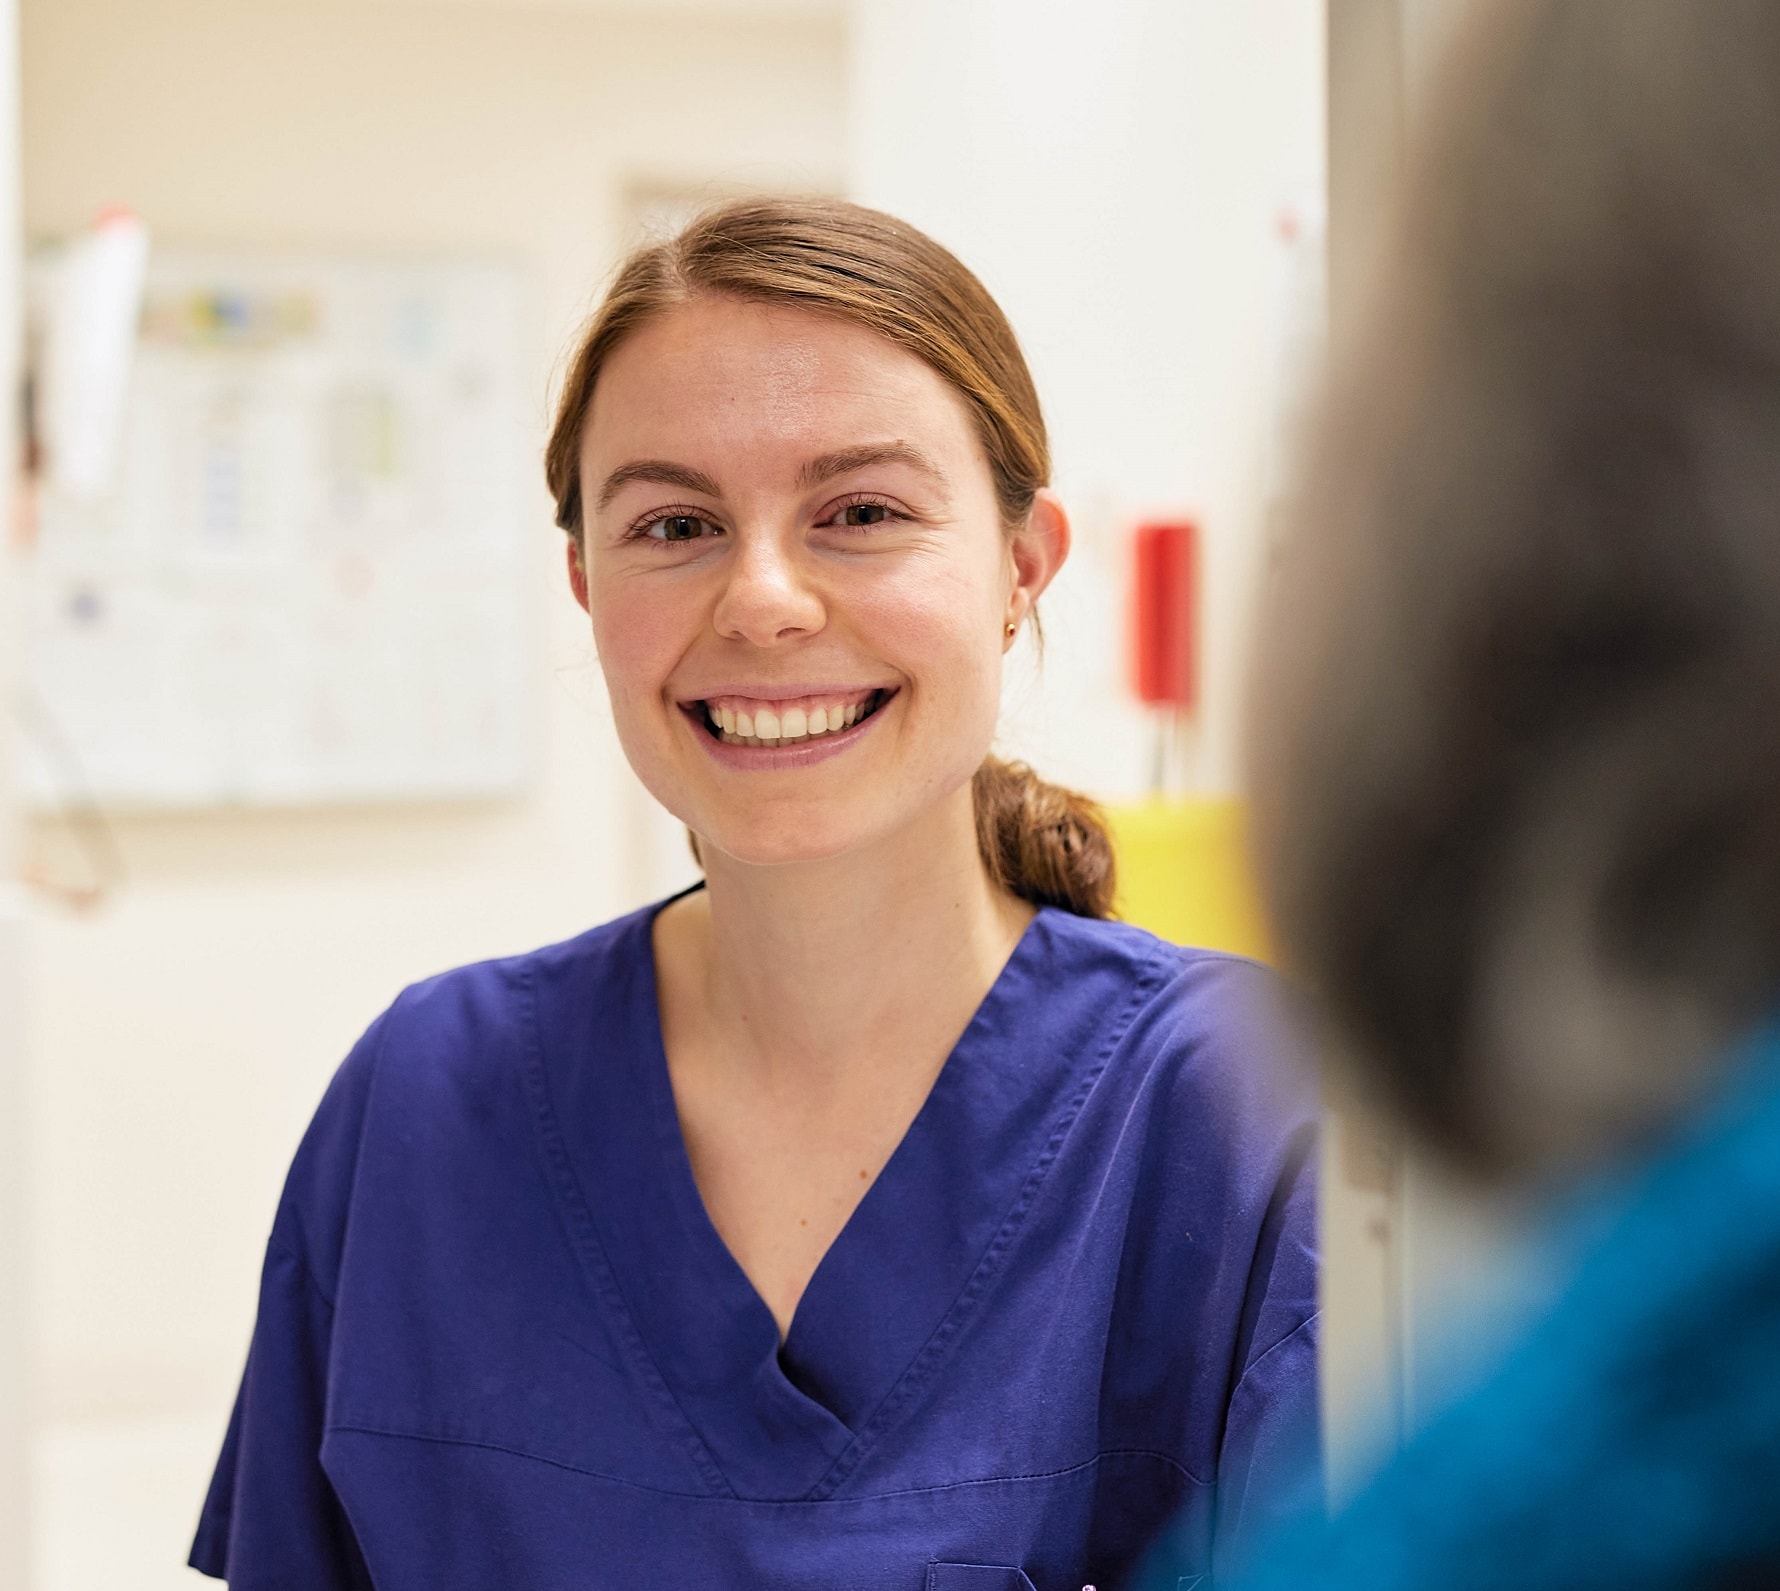 Smiling hospital caregiver in scrubs